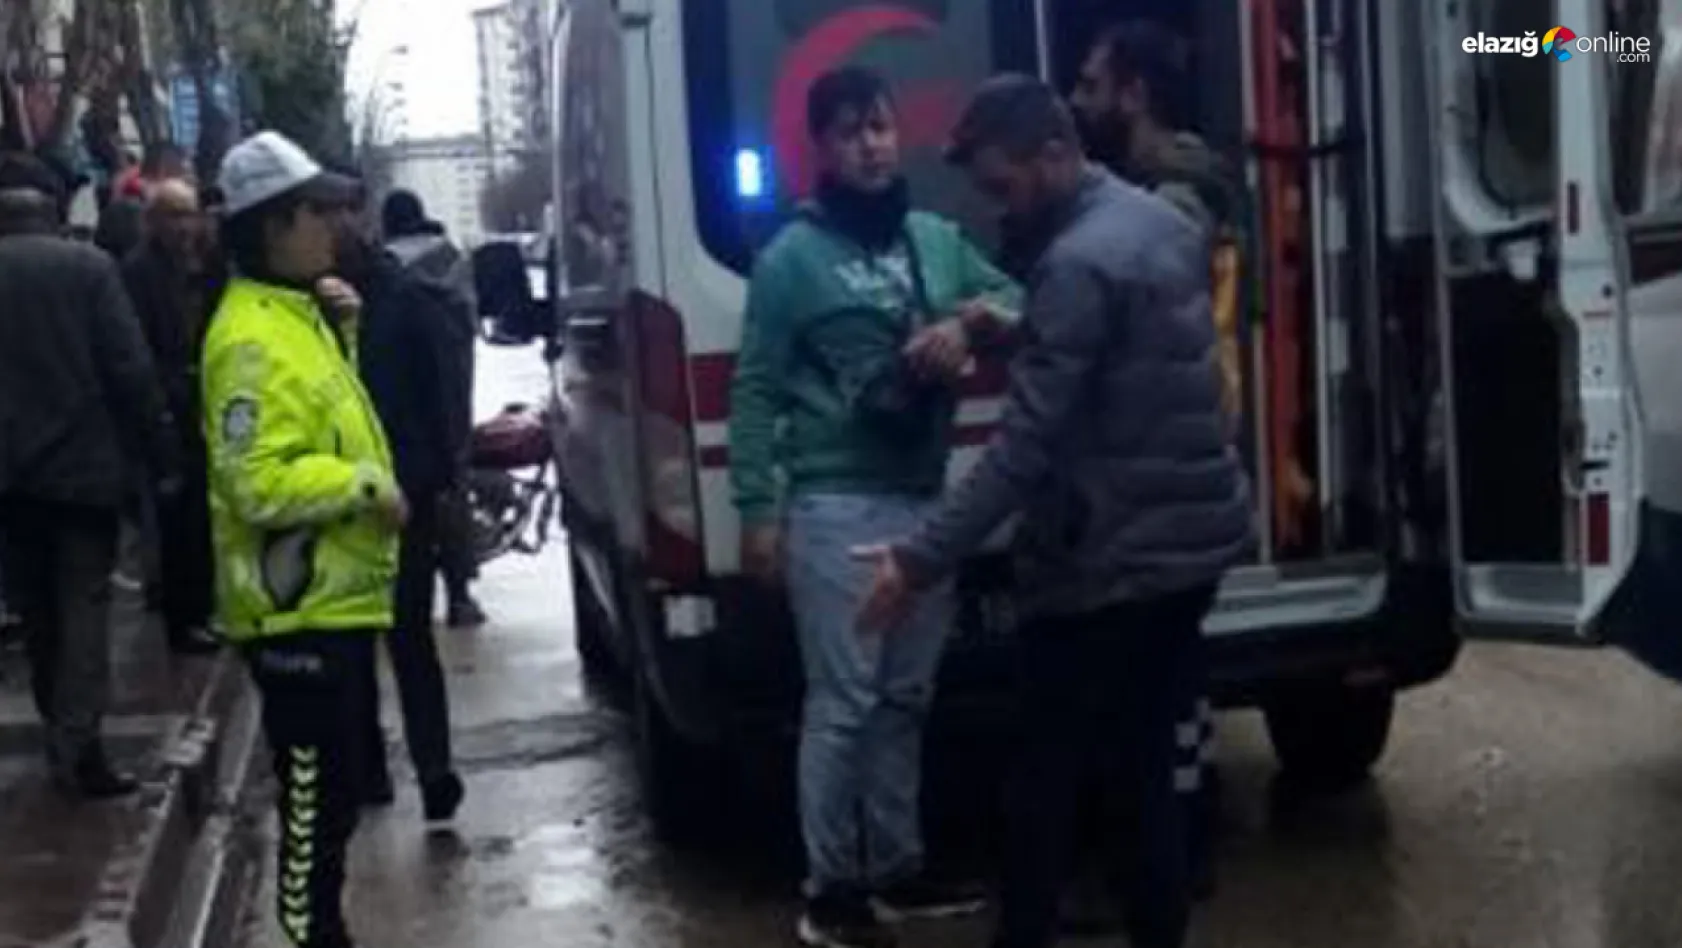 Elazığ'da motosiklet yayaya çarptı: 2 yaralı